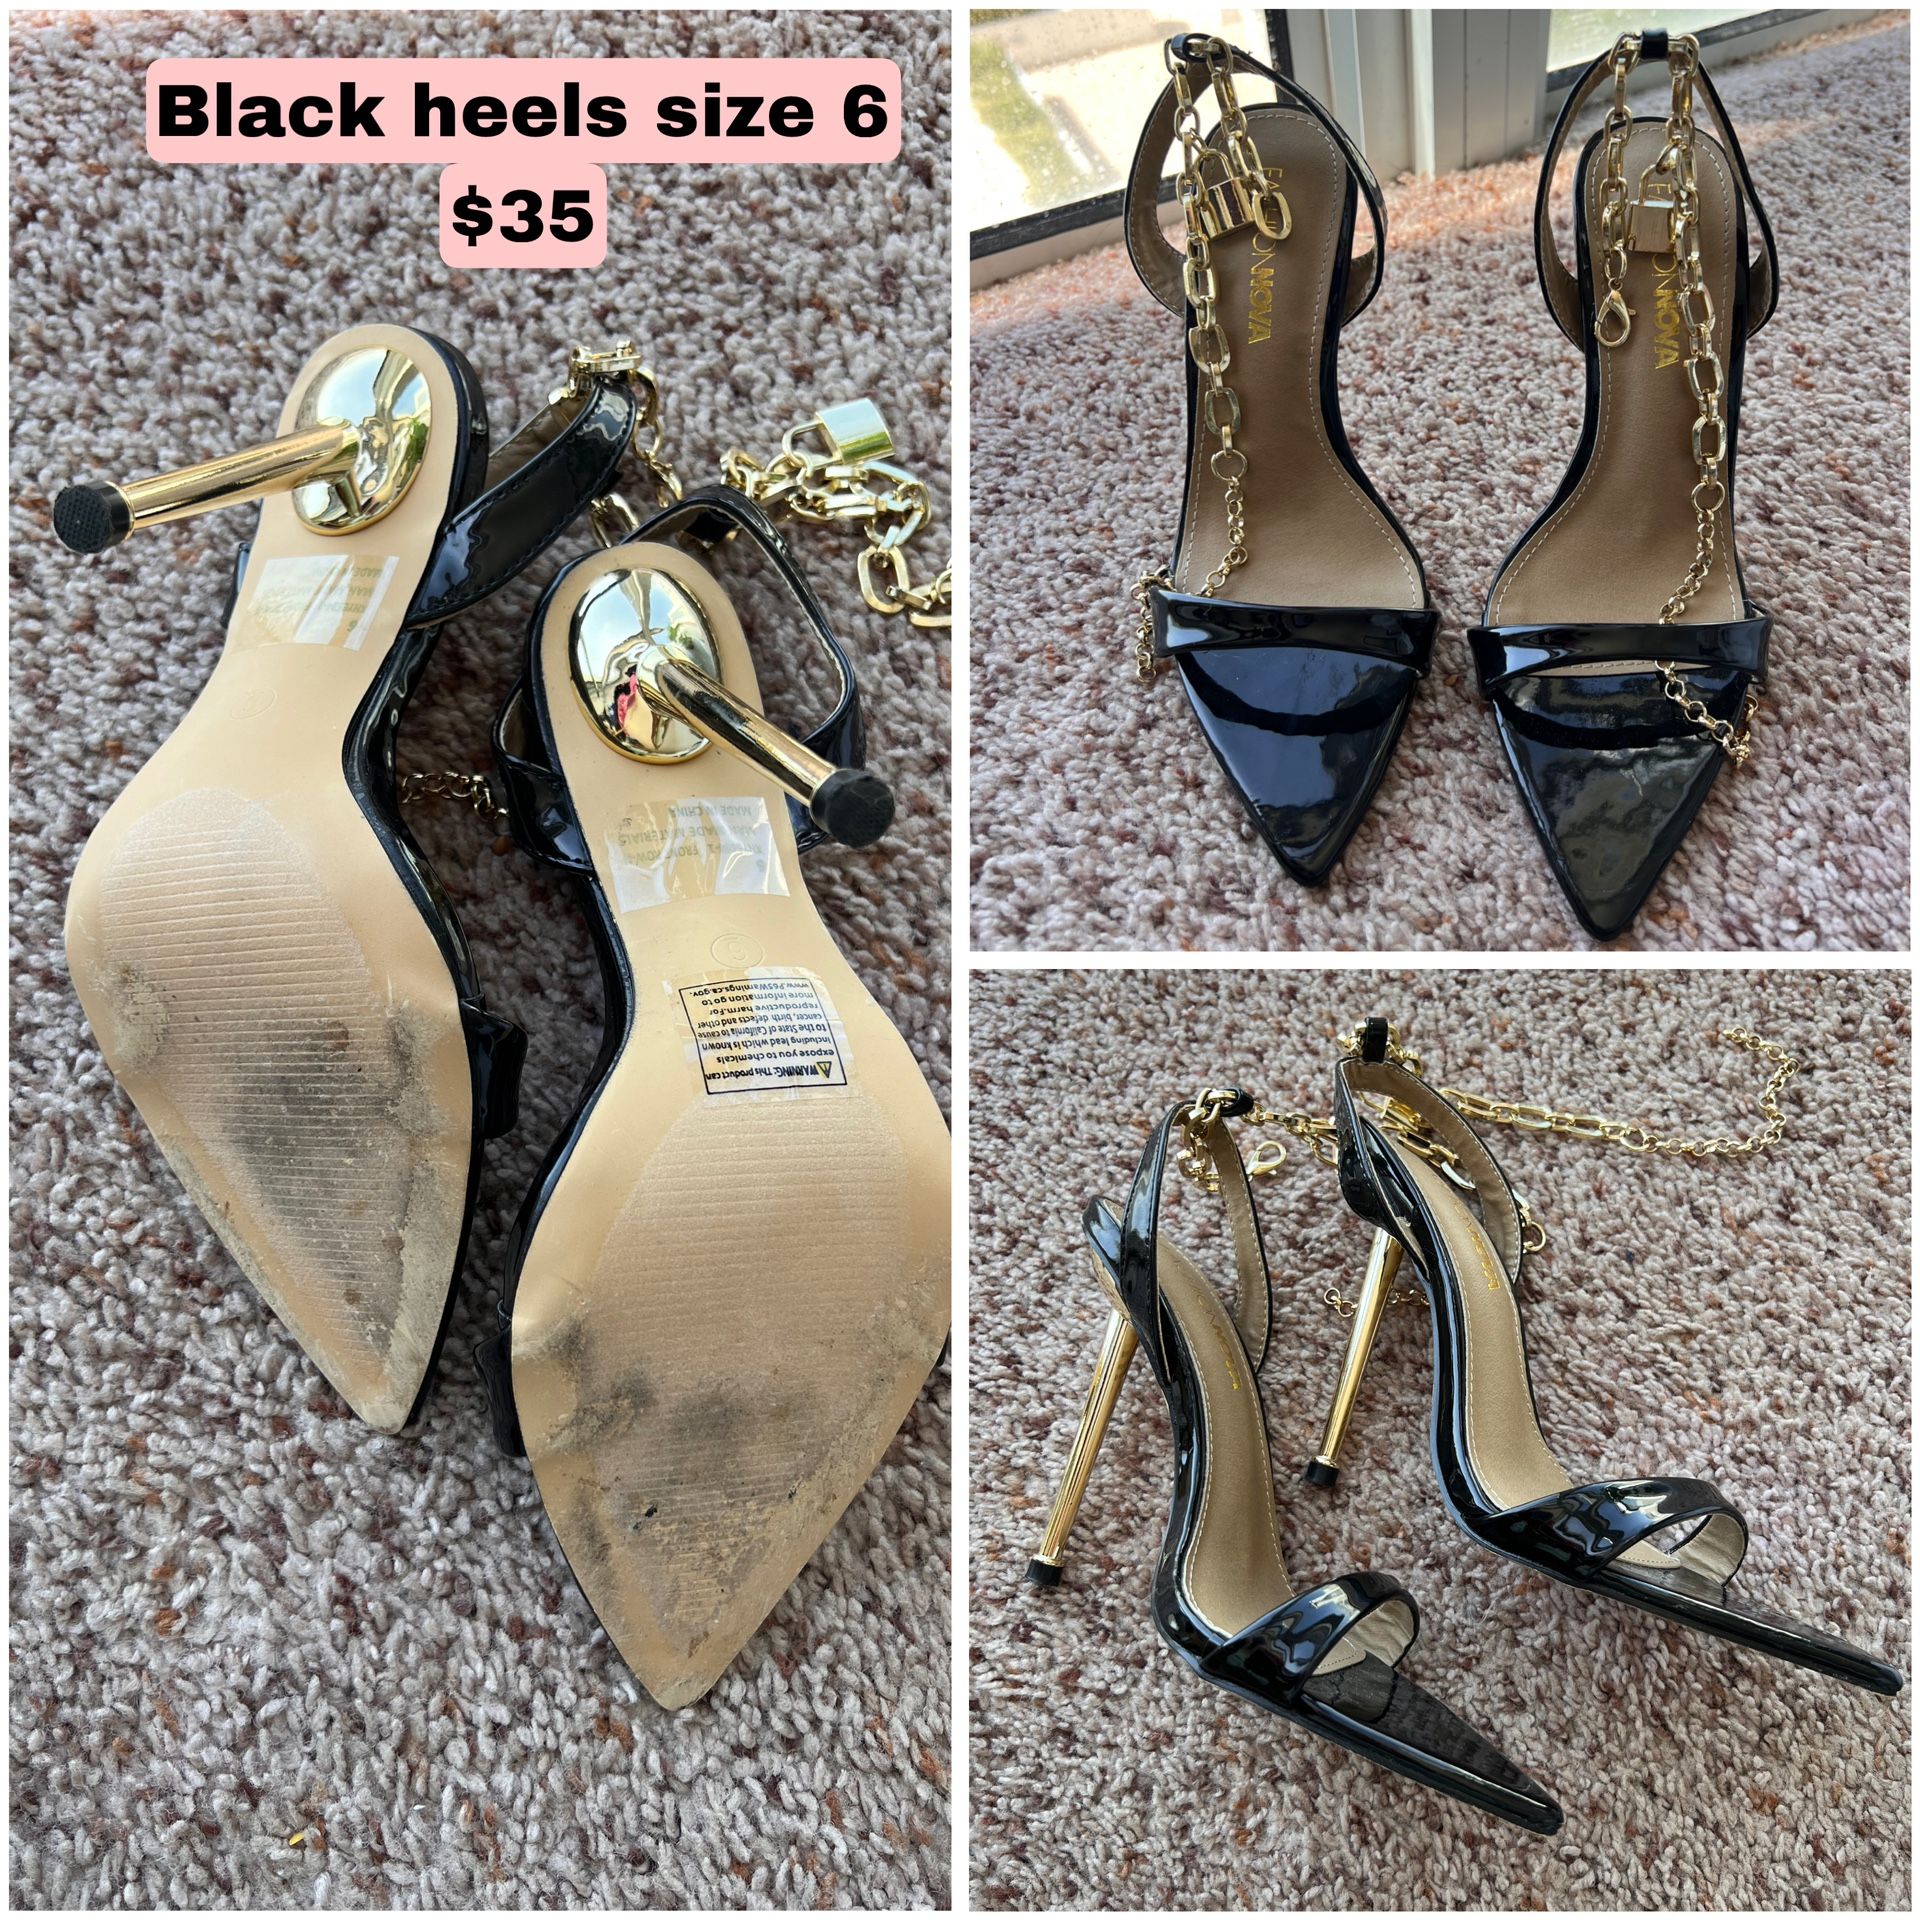 Black Heels For Sale 